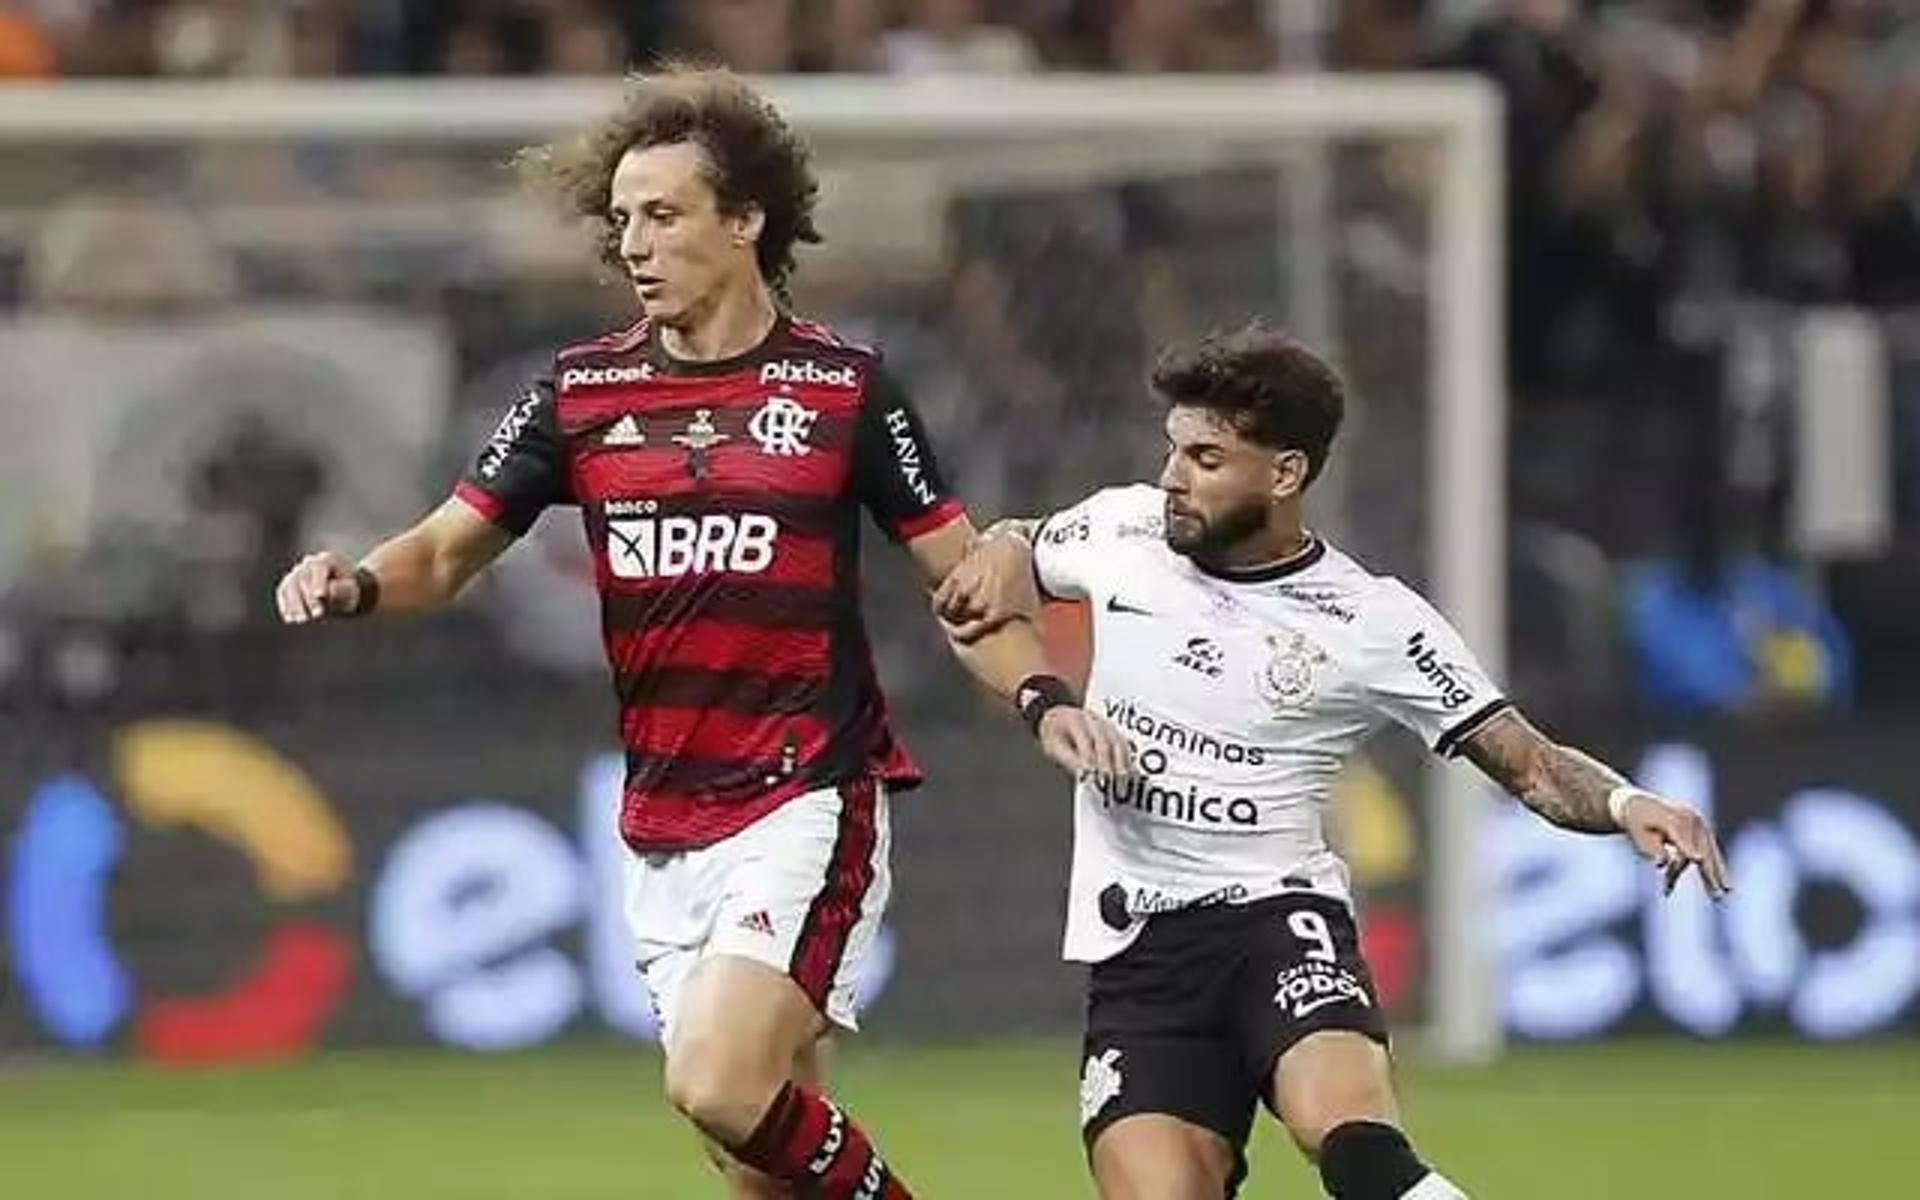 David Luiz - Flamengo x Corinthians